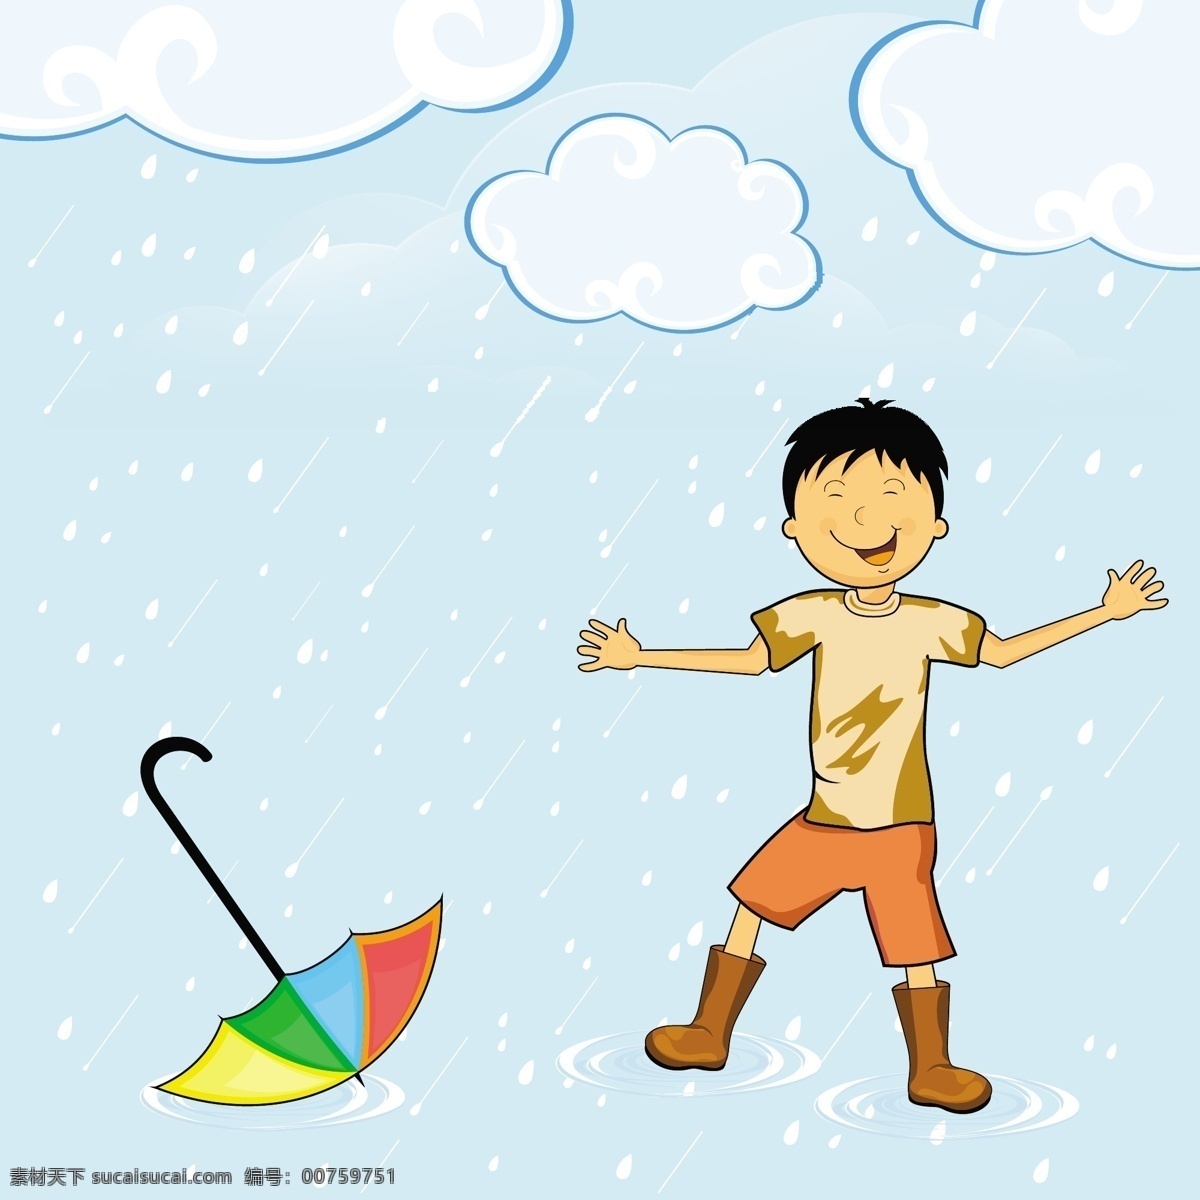 下雨天 不 打伞 男孩 模板下载 坏天气 雨伞 雨鞋 雨滴 彩虹伞 云朵 儿童幼儿 矢量人物 矢量素材 白色